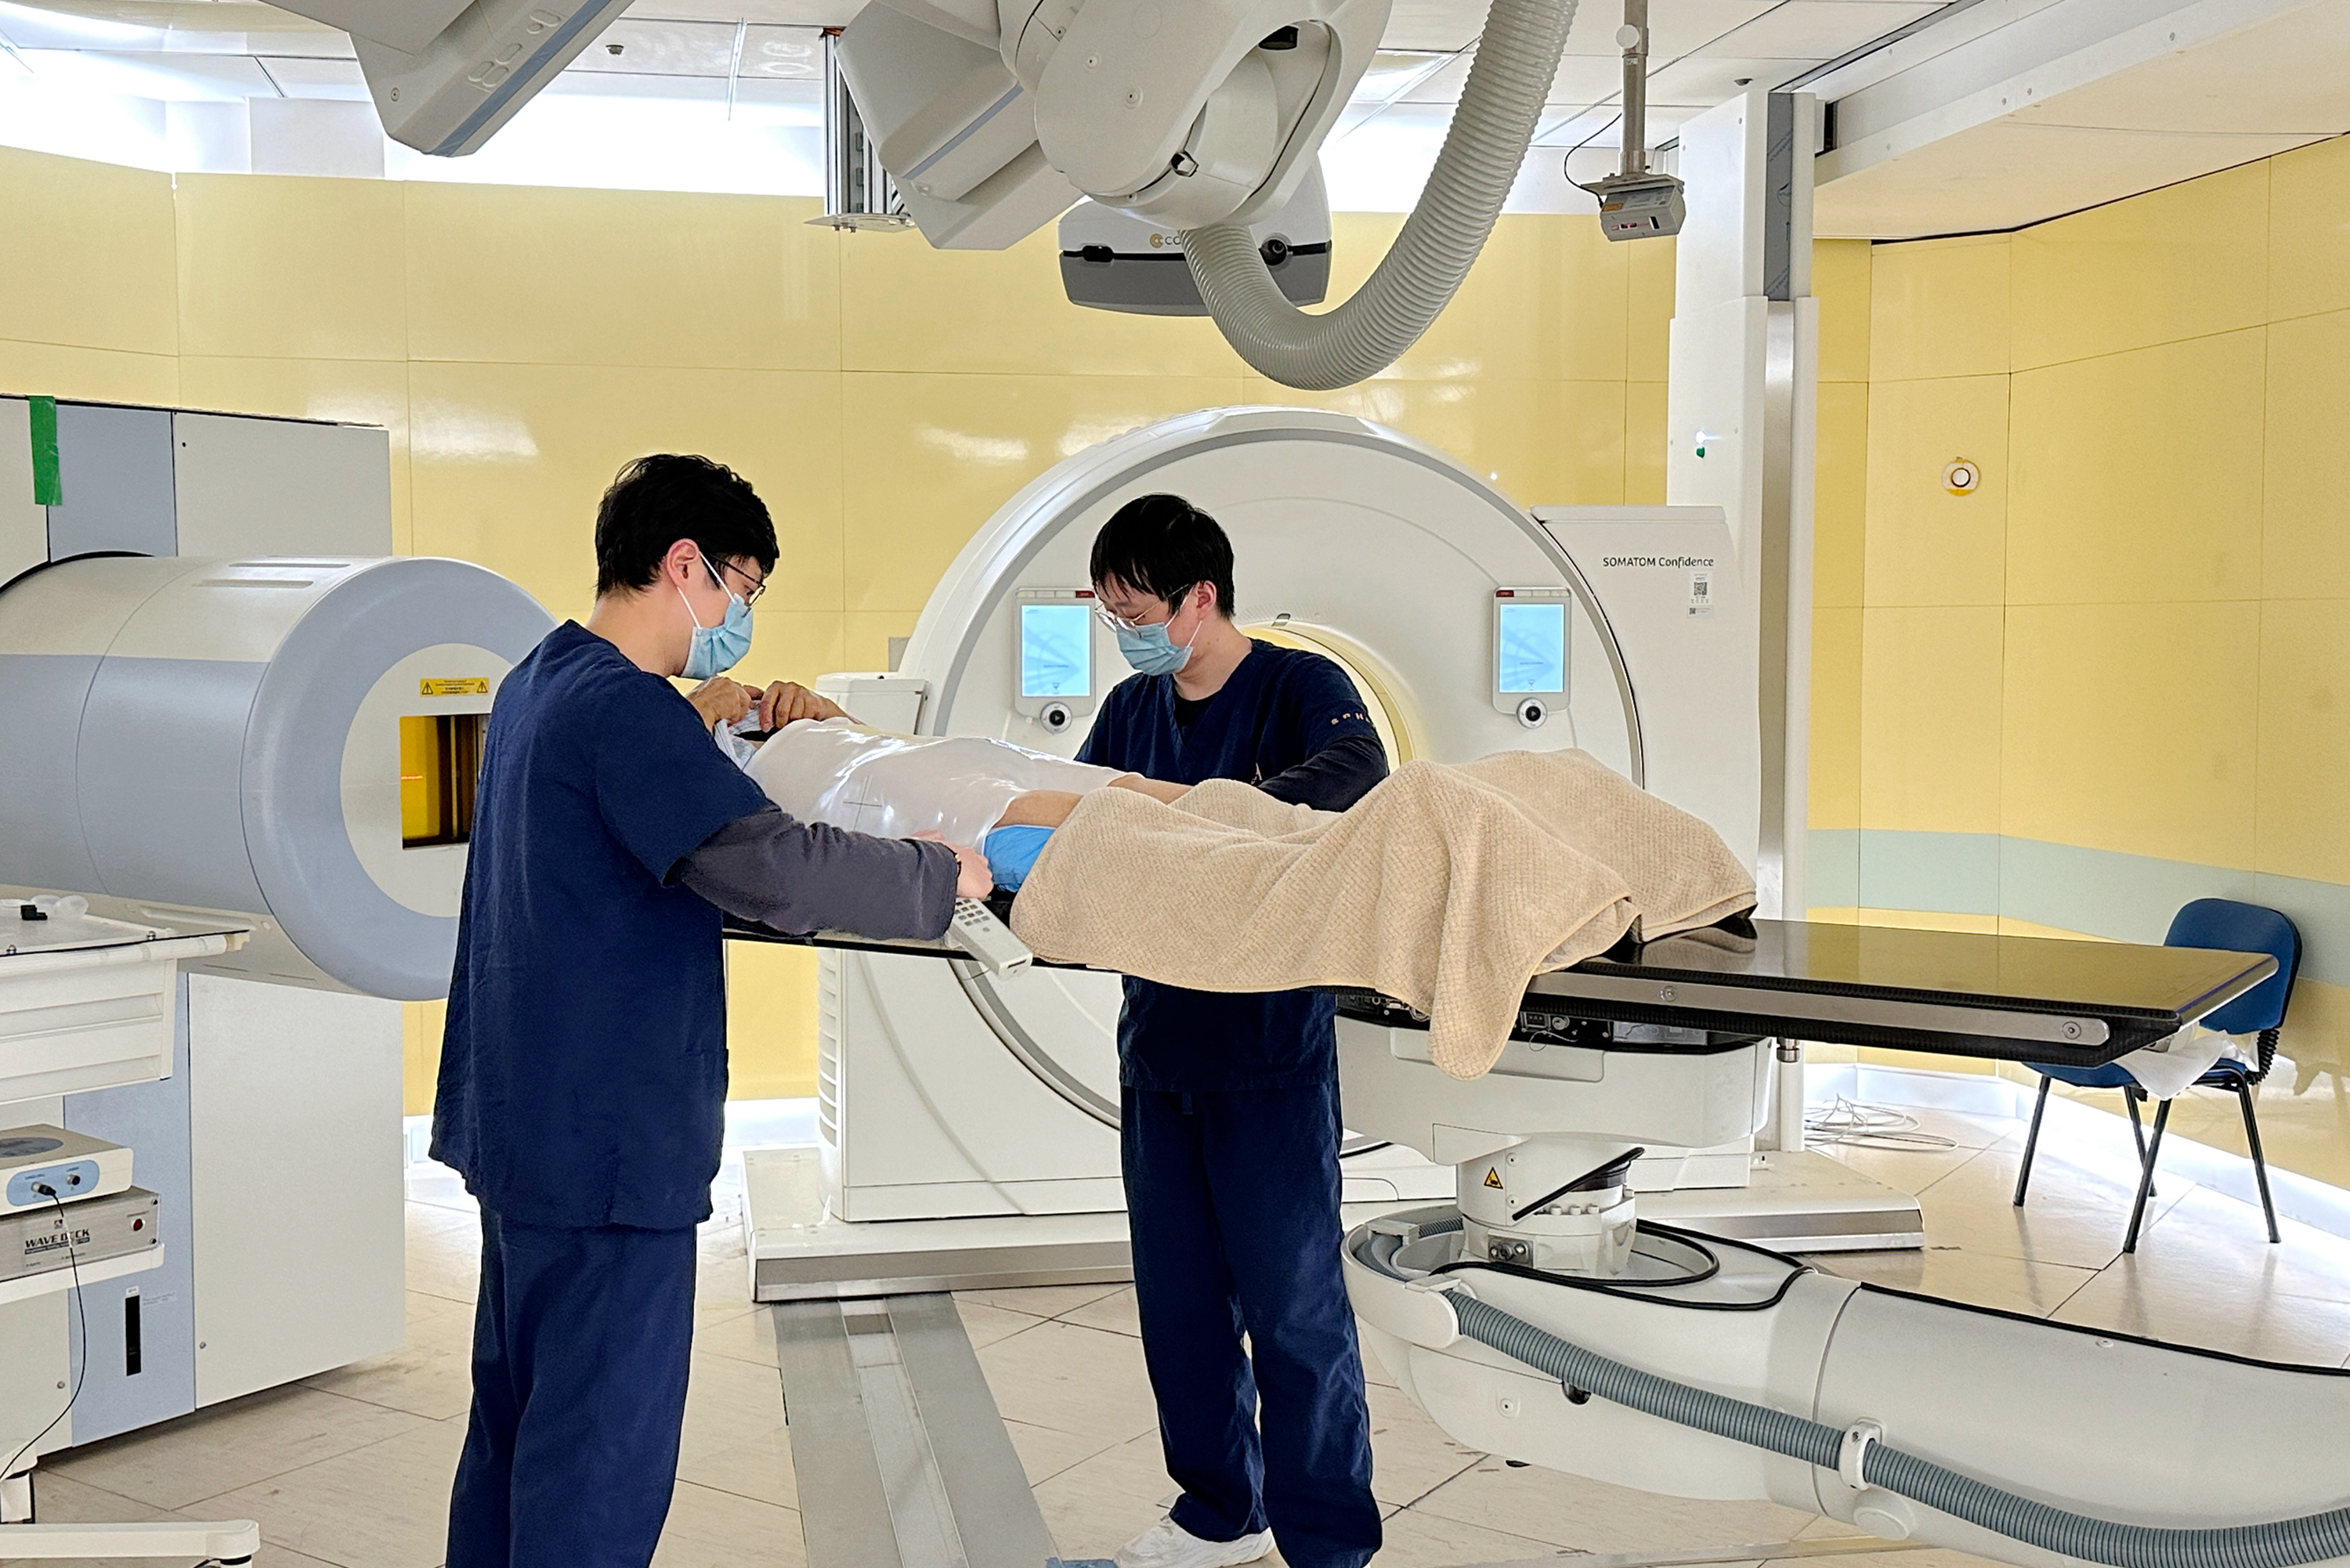 上海市质子重离子医院收治肿瘤病种扩至近50种首创治疗大幅提高生存率